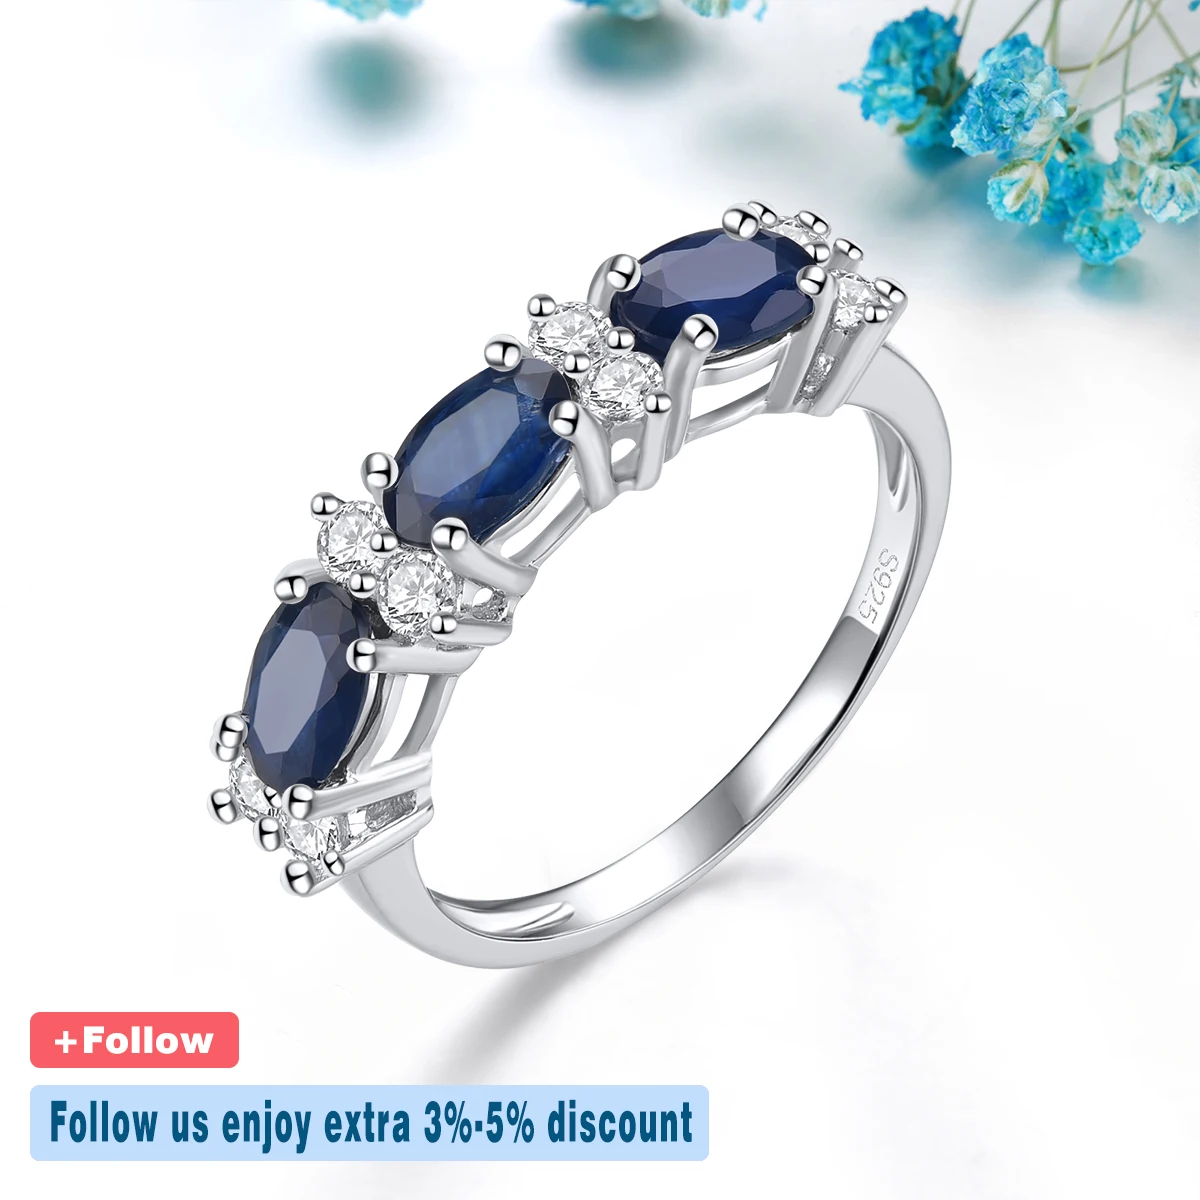 Anéis de Safira Azul Natural para Mulheres, Safira Preciosa Genuína, Prata Esterlina Sólida, Joalheria Fina Clássica, 1,8 Quilates, Design S925